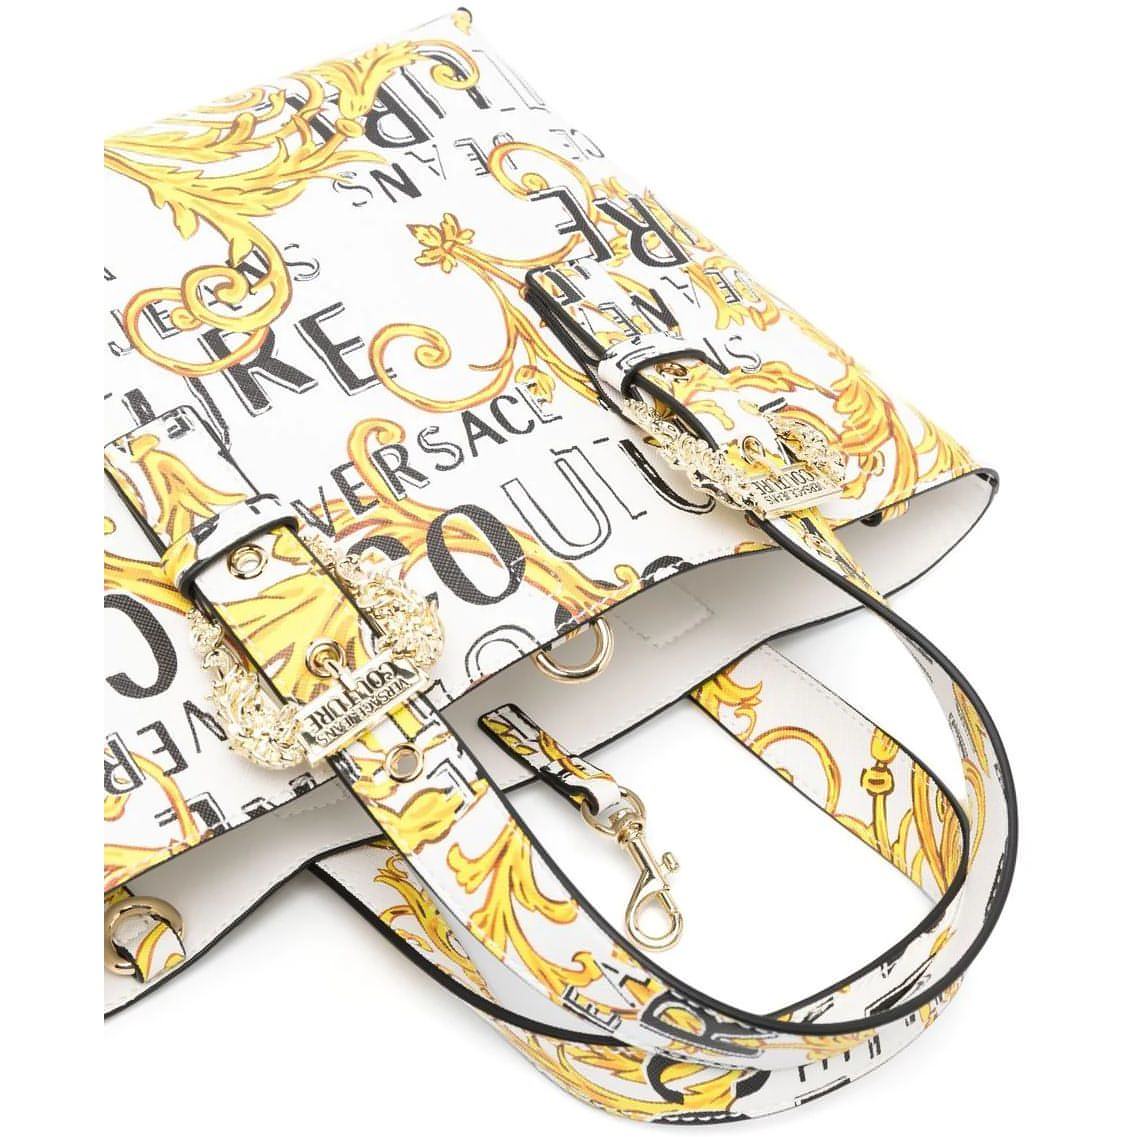 VERSACE JEANS COUTURE moteriška spalvota rankinė Range f - couture bag